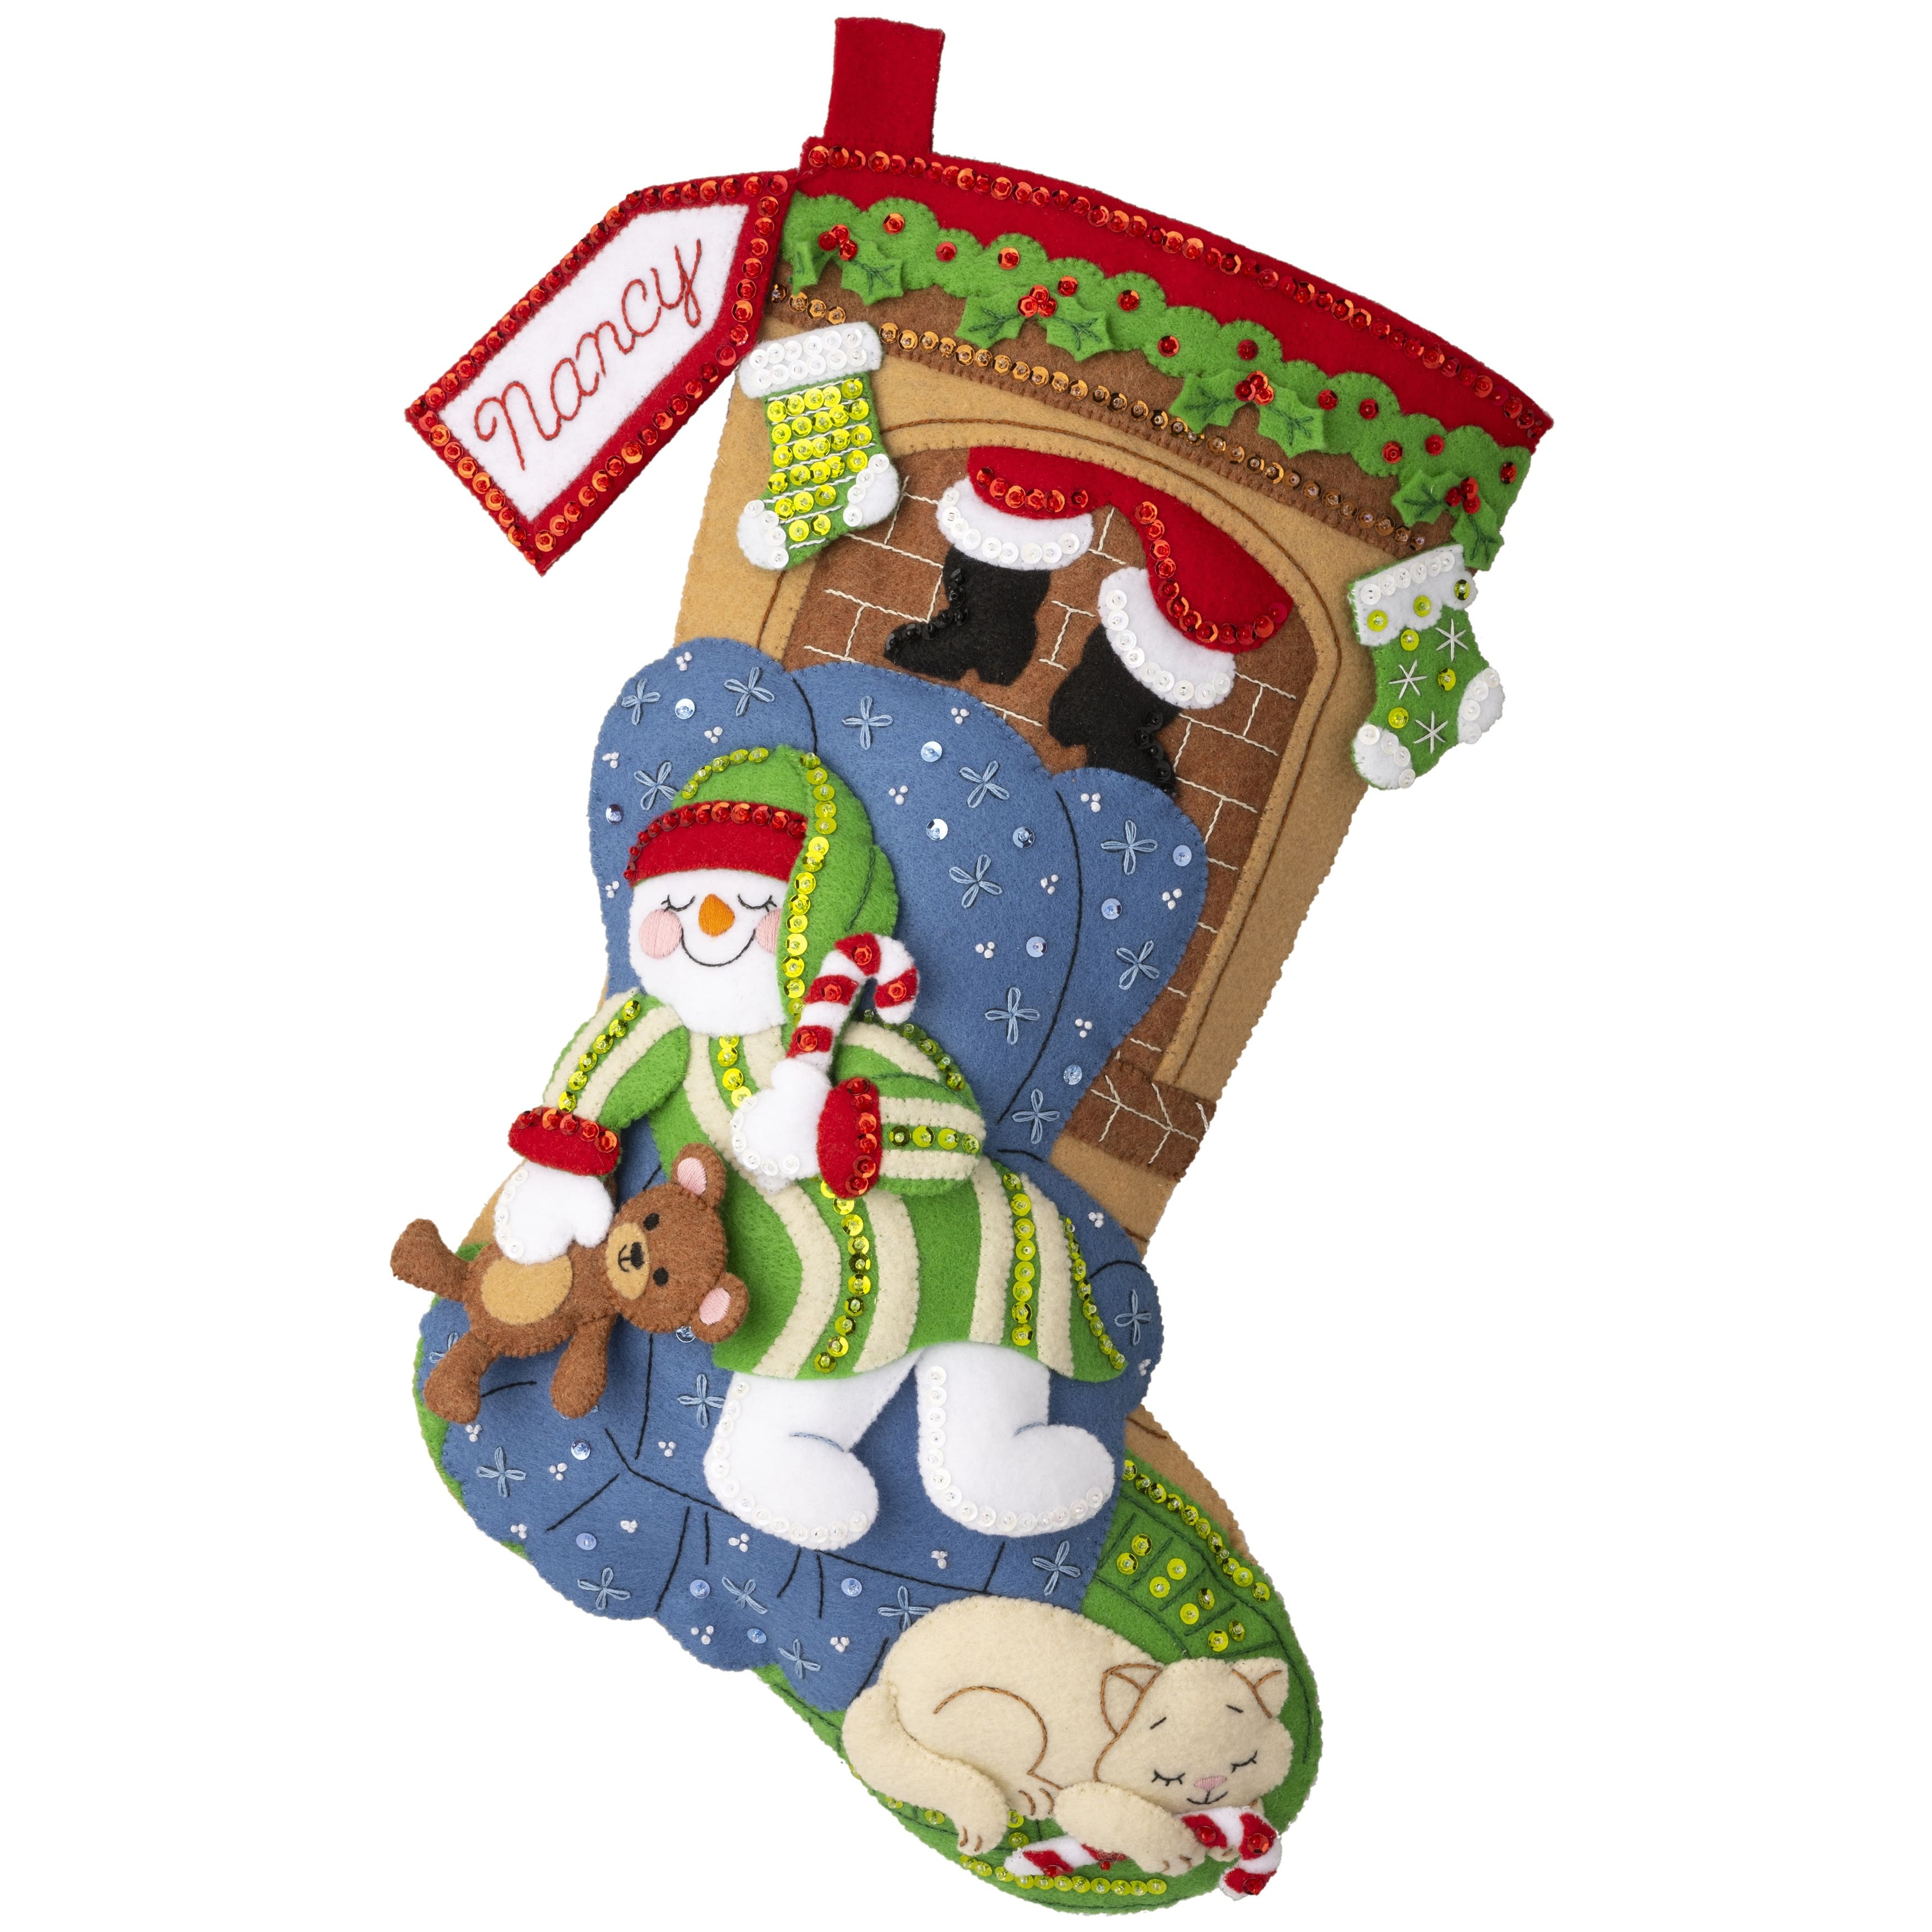 Applique Christmas Stocking Kits